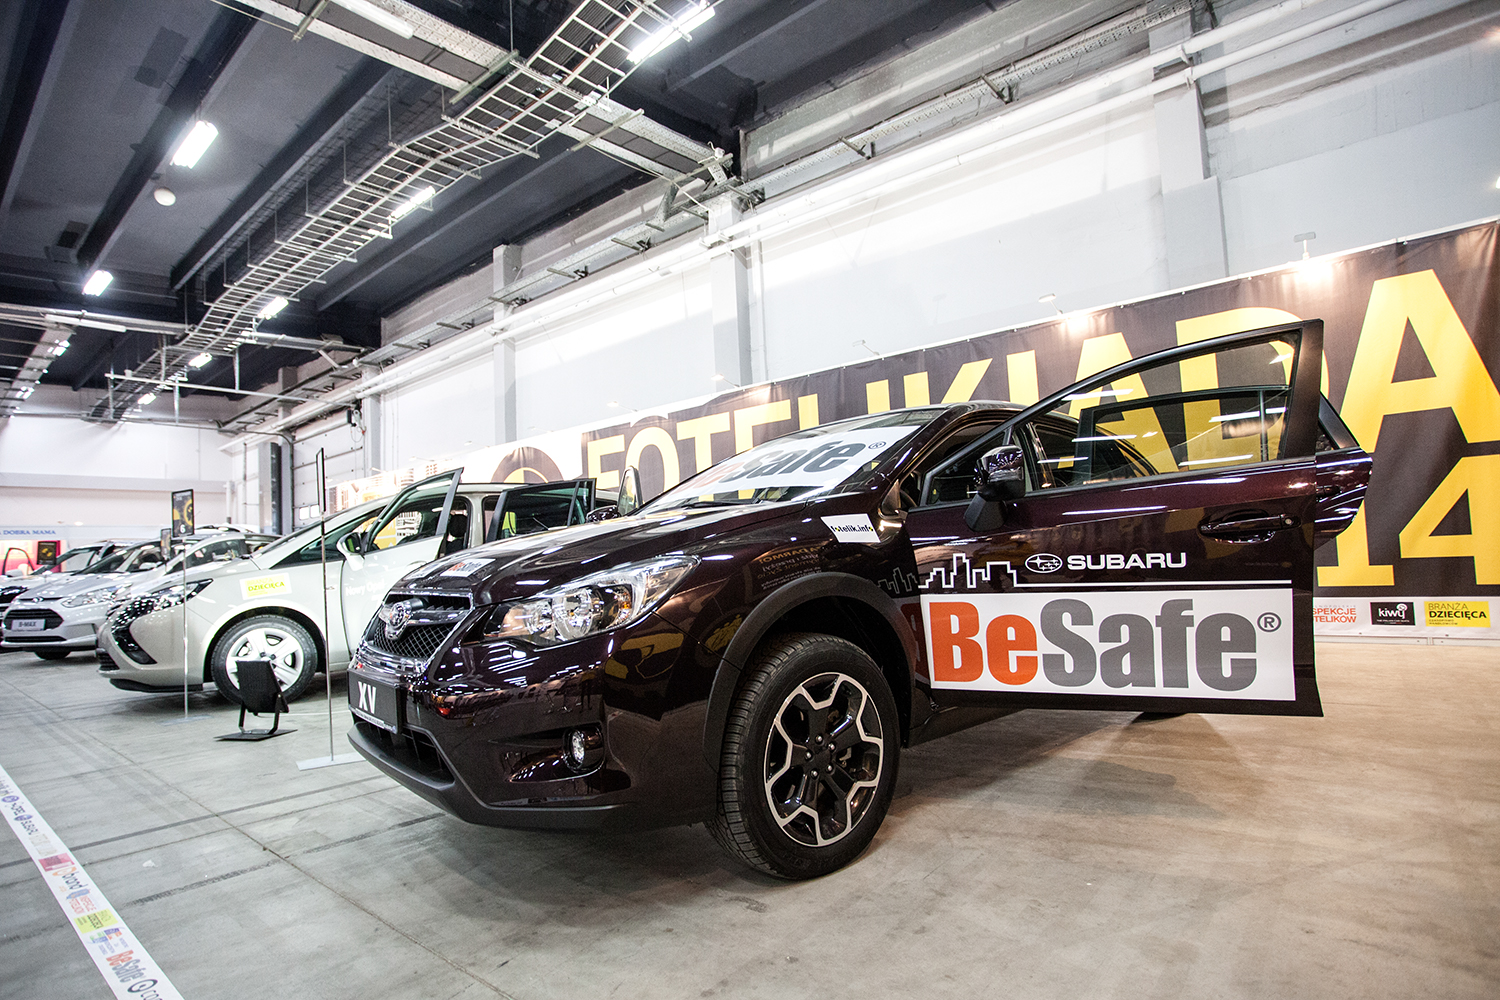 BeSafe i Subaru byli partnerami fotelik.info na Targach Czas Dziecka 2014